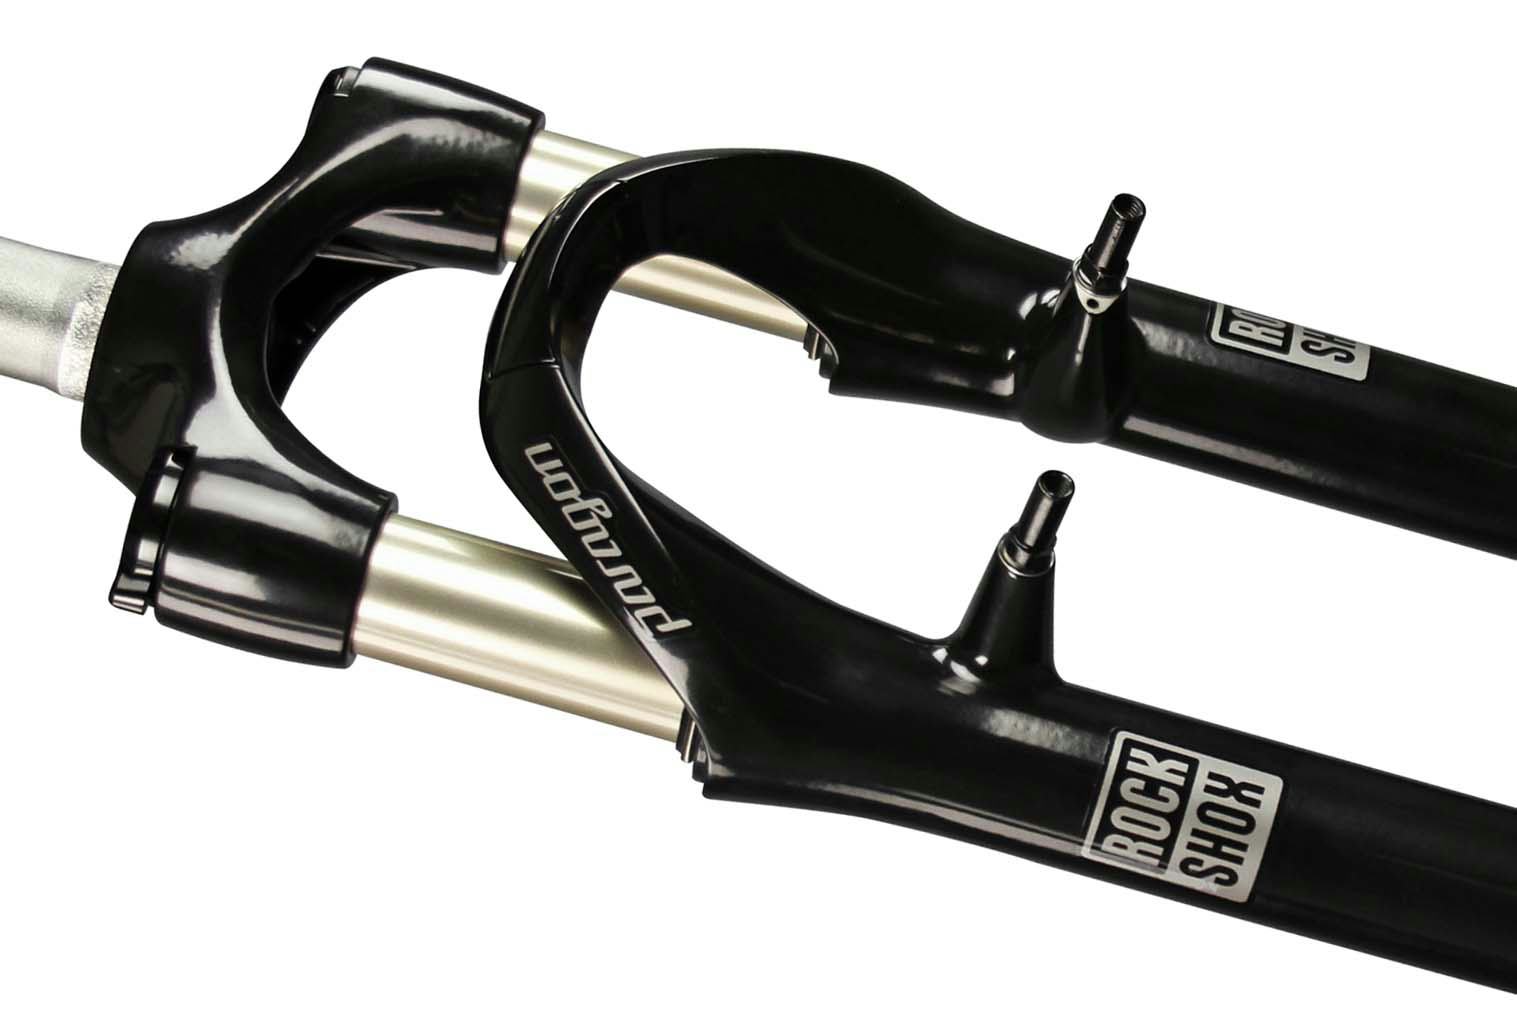 New market for Rockshox; suspension forks for Trekking bikes. – Photo Rockshox